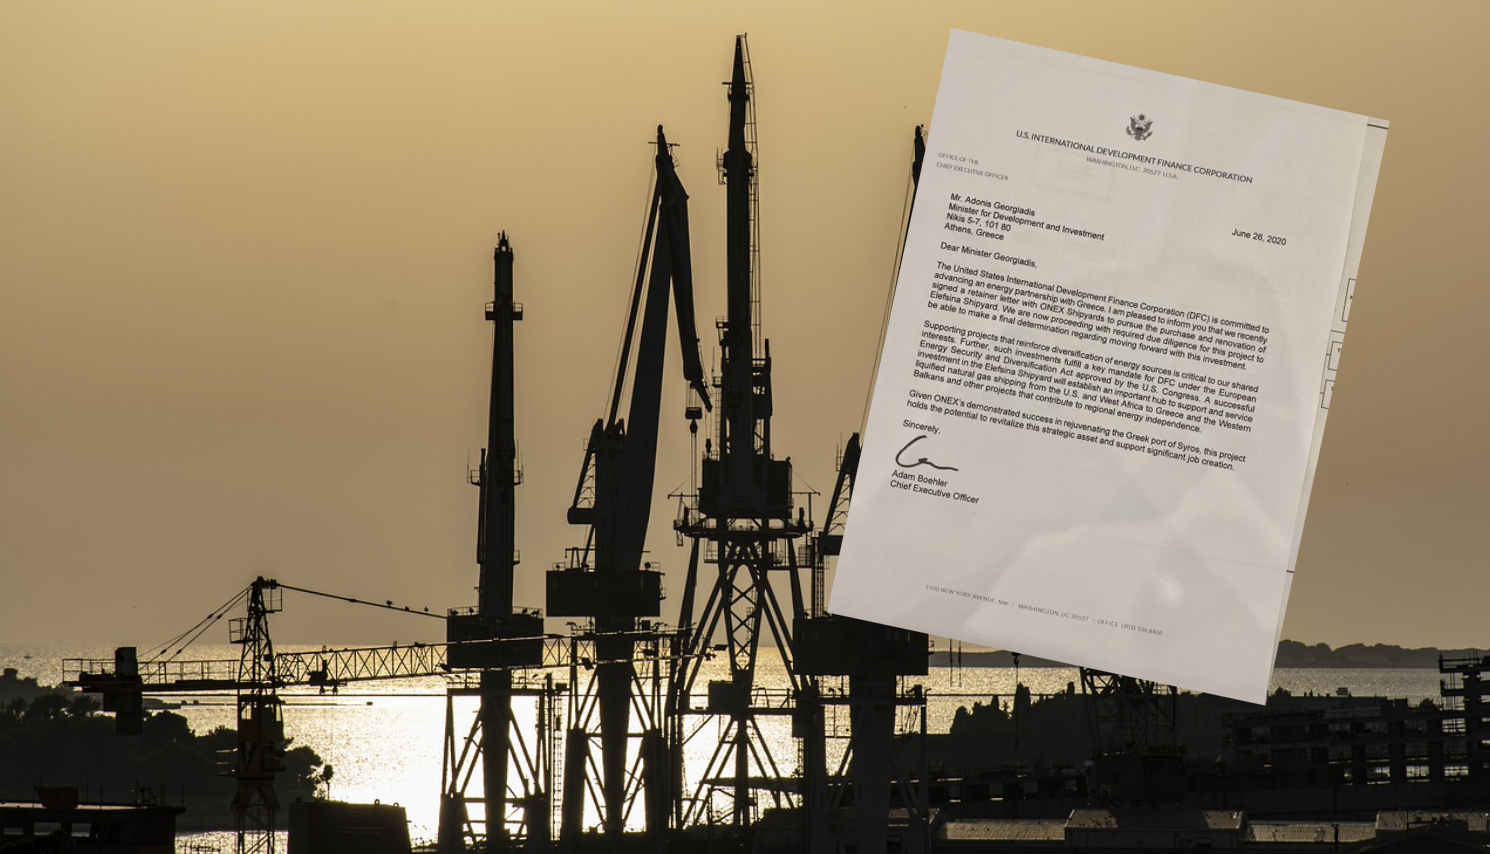 Τι θέλουν να κάνουν στα ναυπηγεία Ελευσίνας οι ΗΠΑ; Μια επιστολή που προκαλεί ερωτήματα